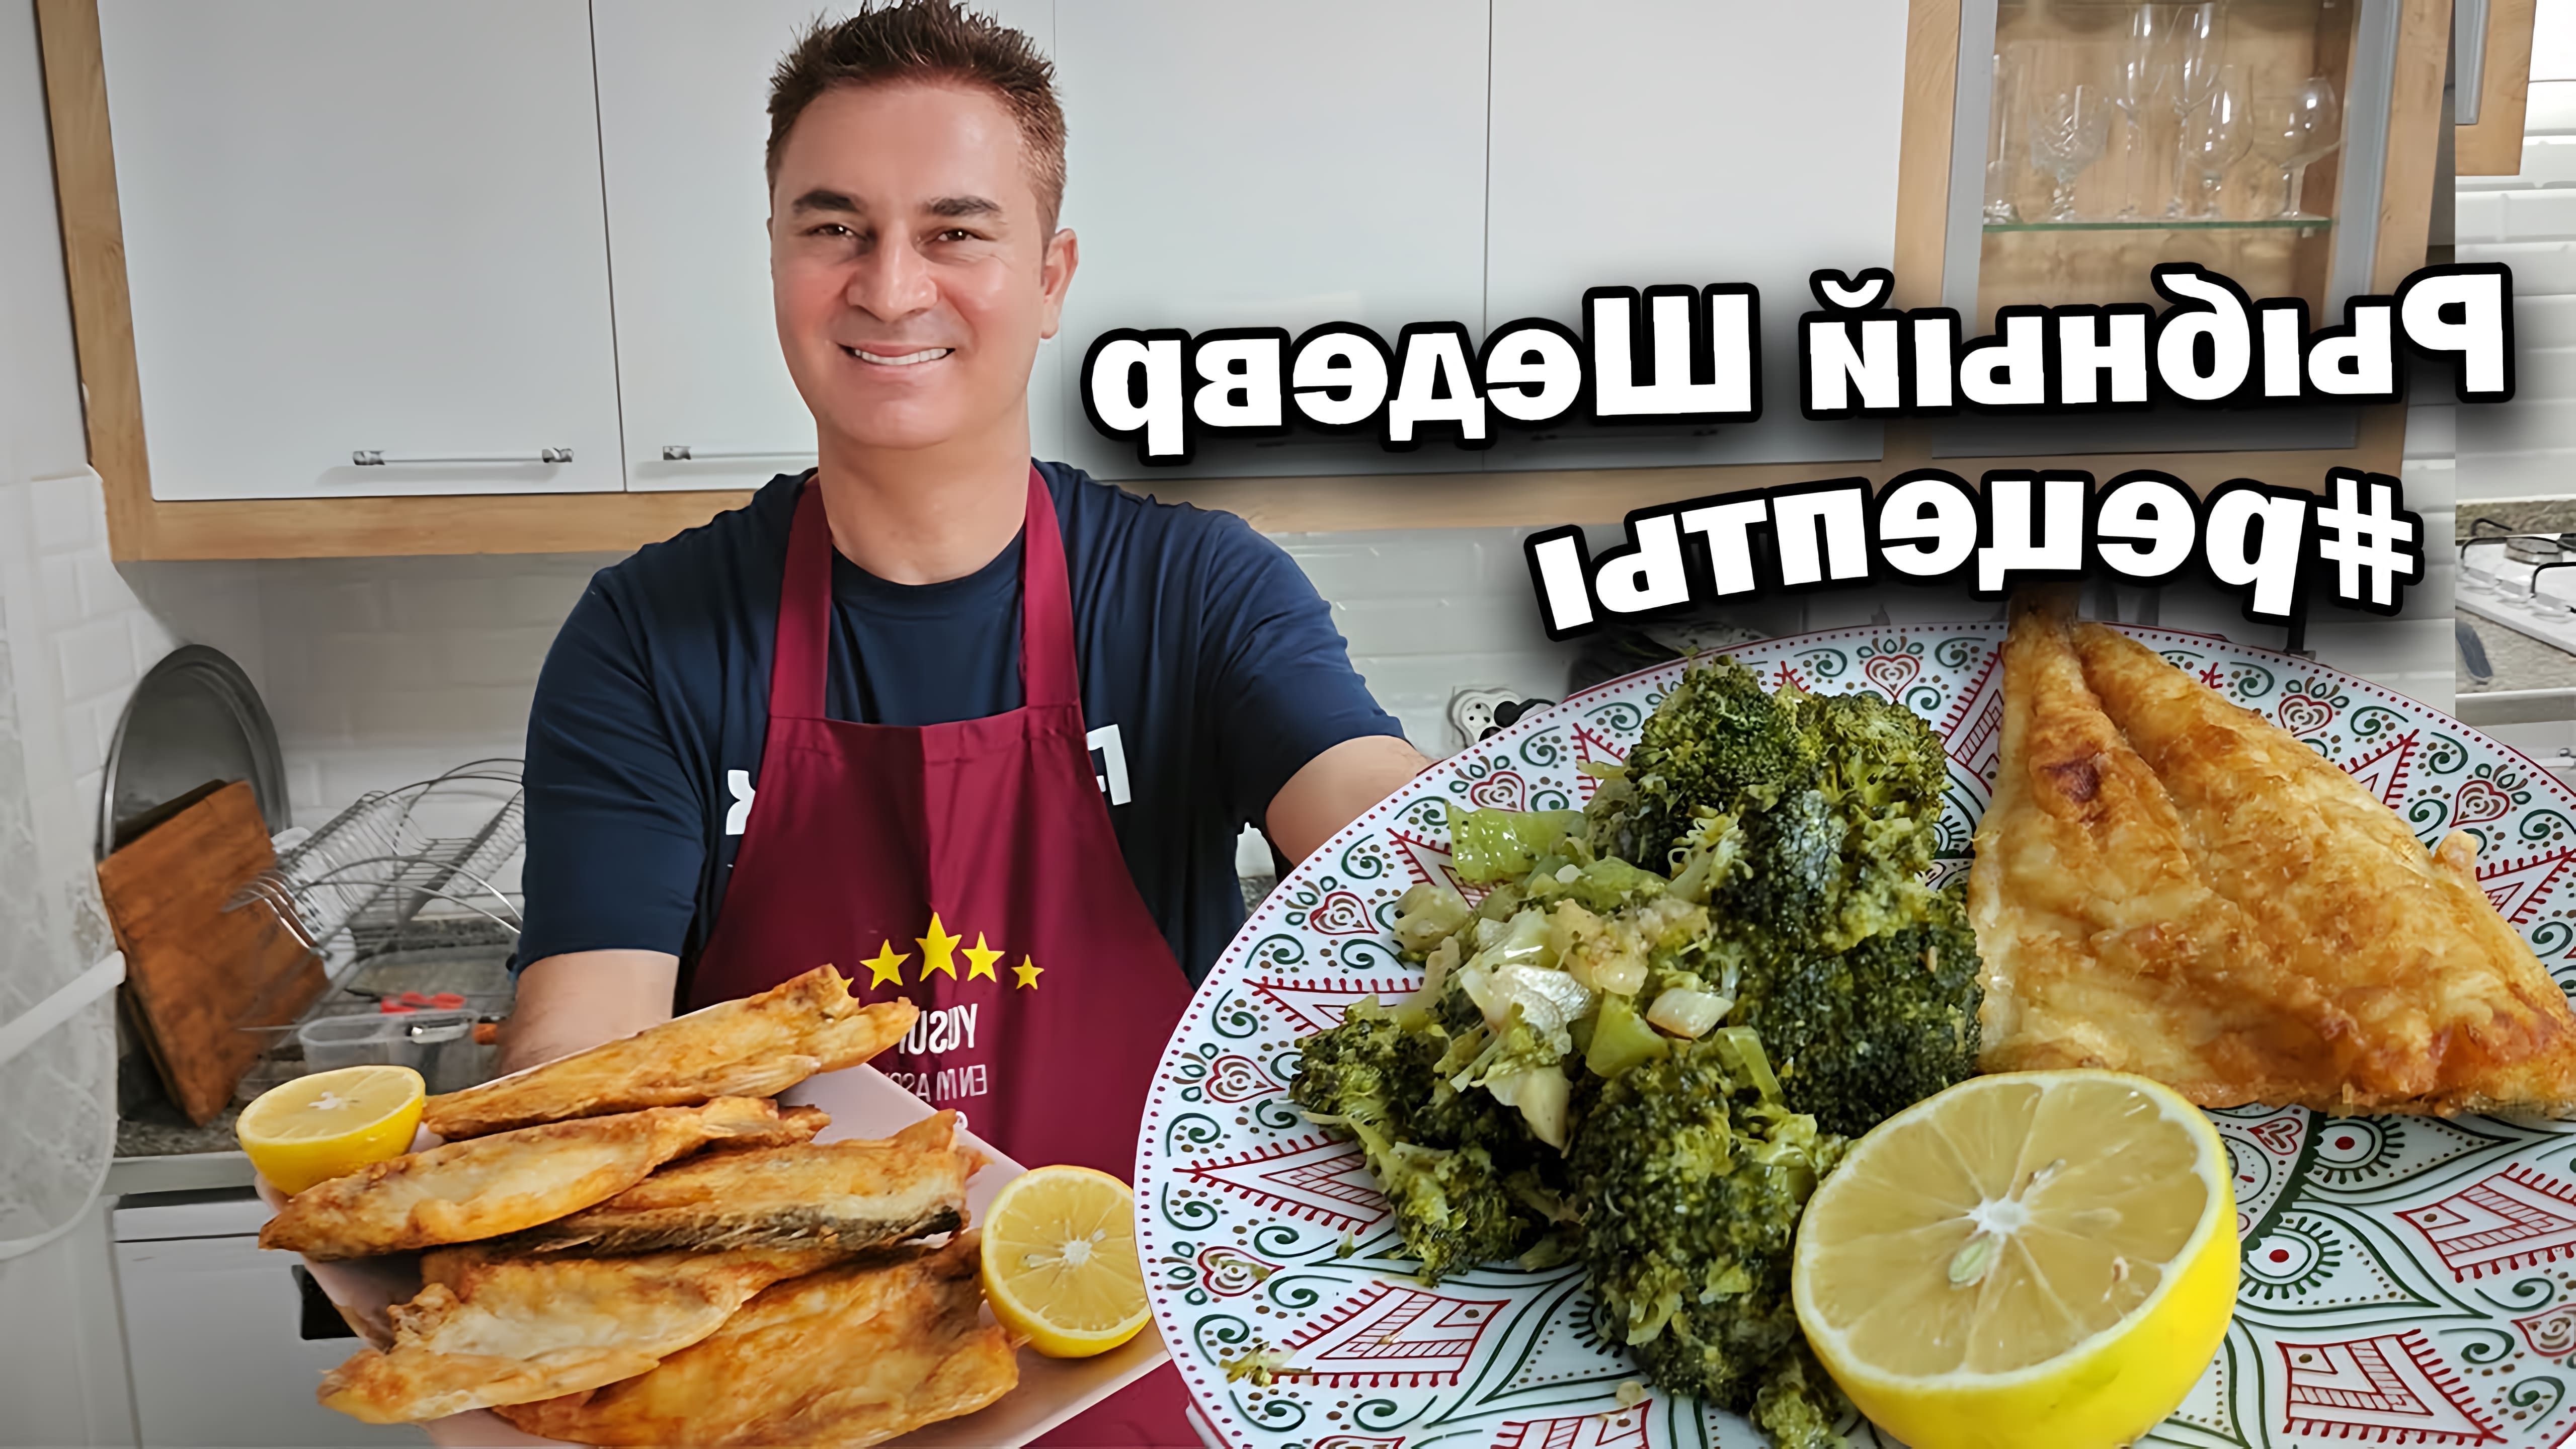 В этом видео папа готовит рыбу, следуя рецепту, который он считает изменит представление о вкусе